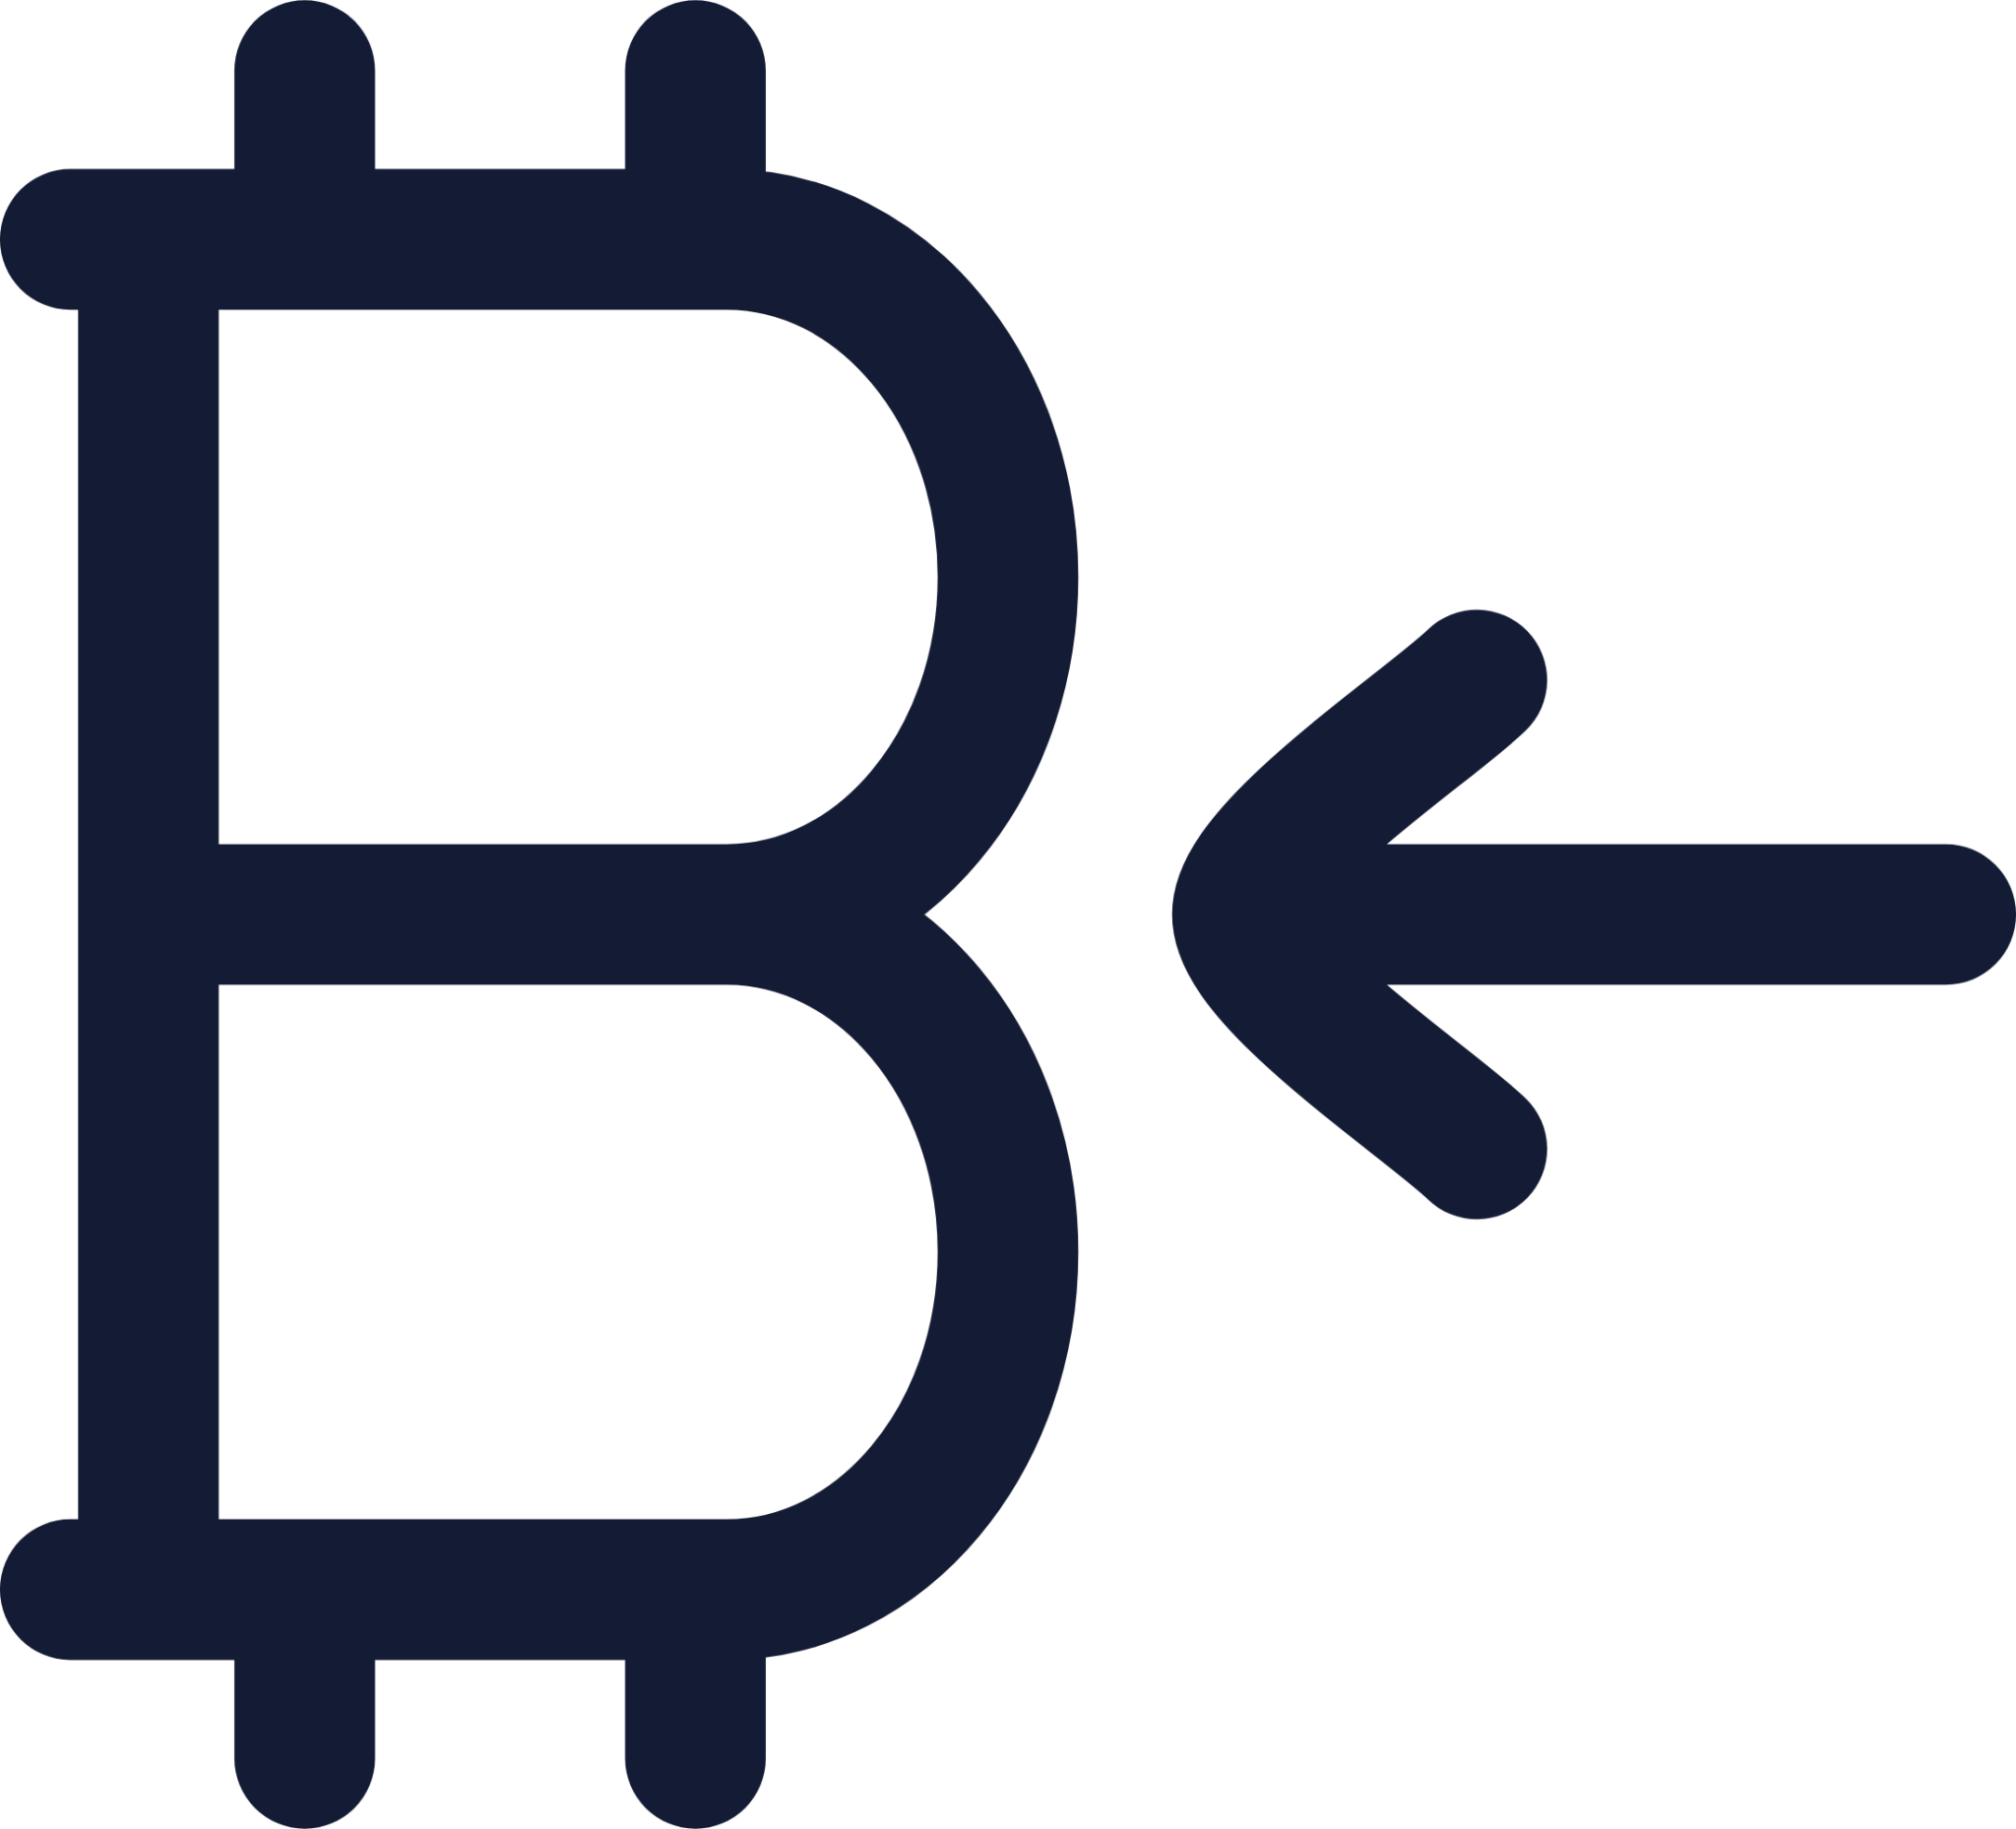 bitcoin receive icon